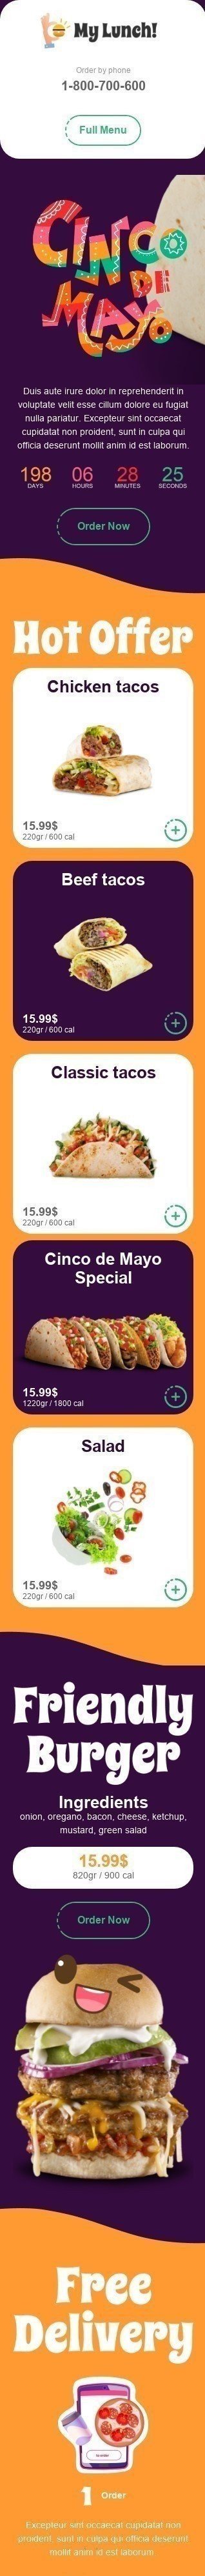 Plantilla de correo electrónico «Tacos clásicos» de Cinco de Mayo para la industria de Gastronomía Vista de móvil